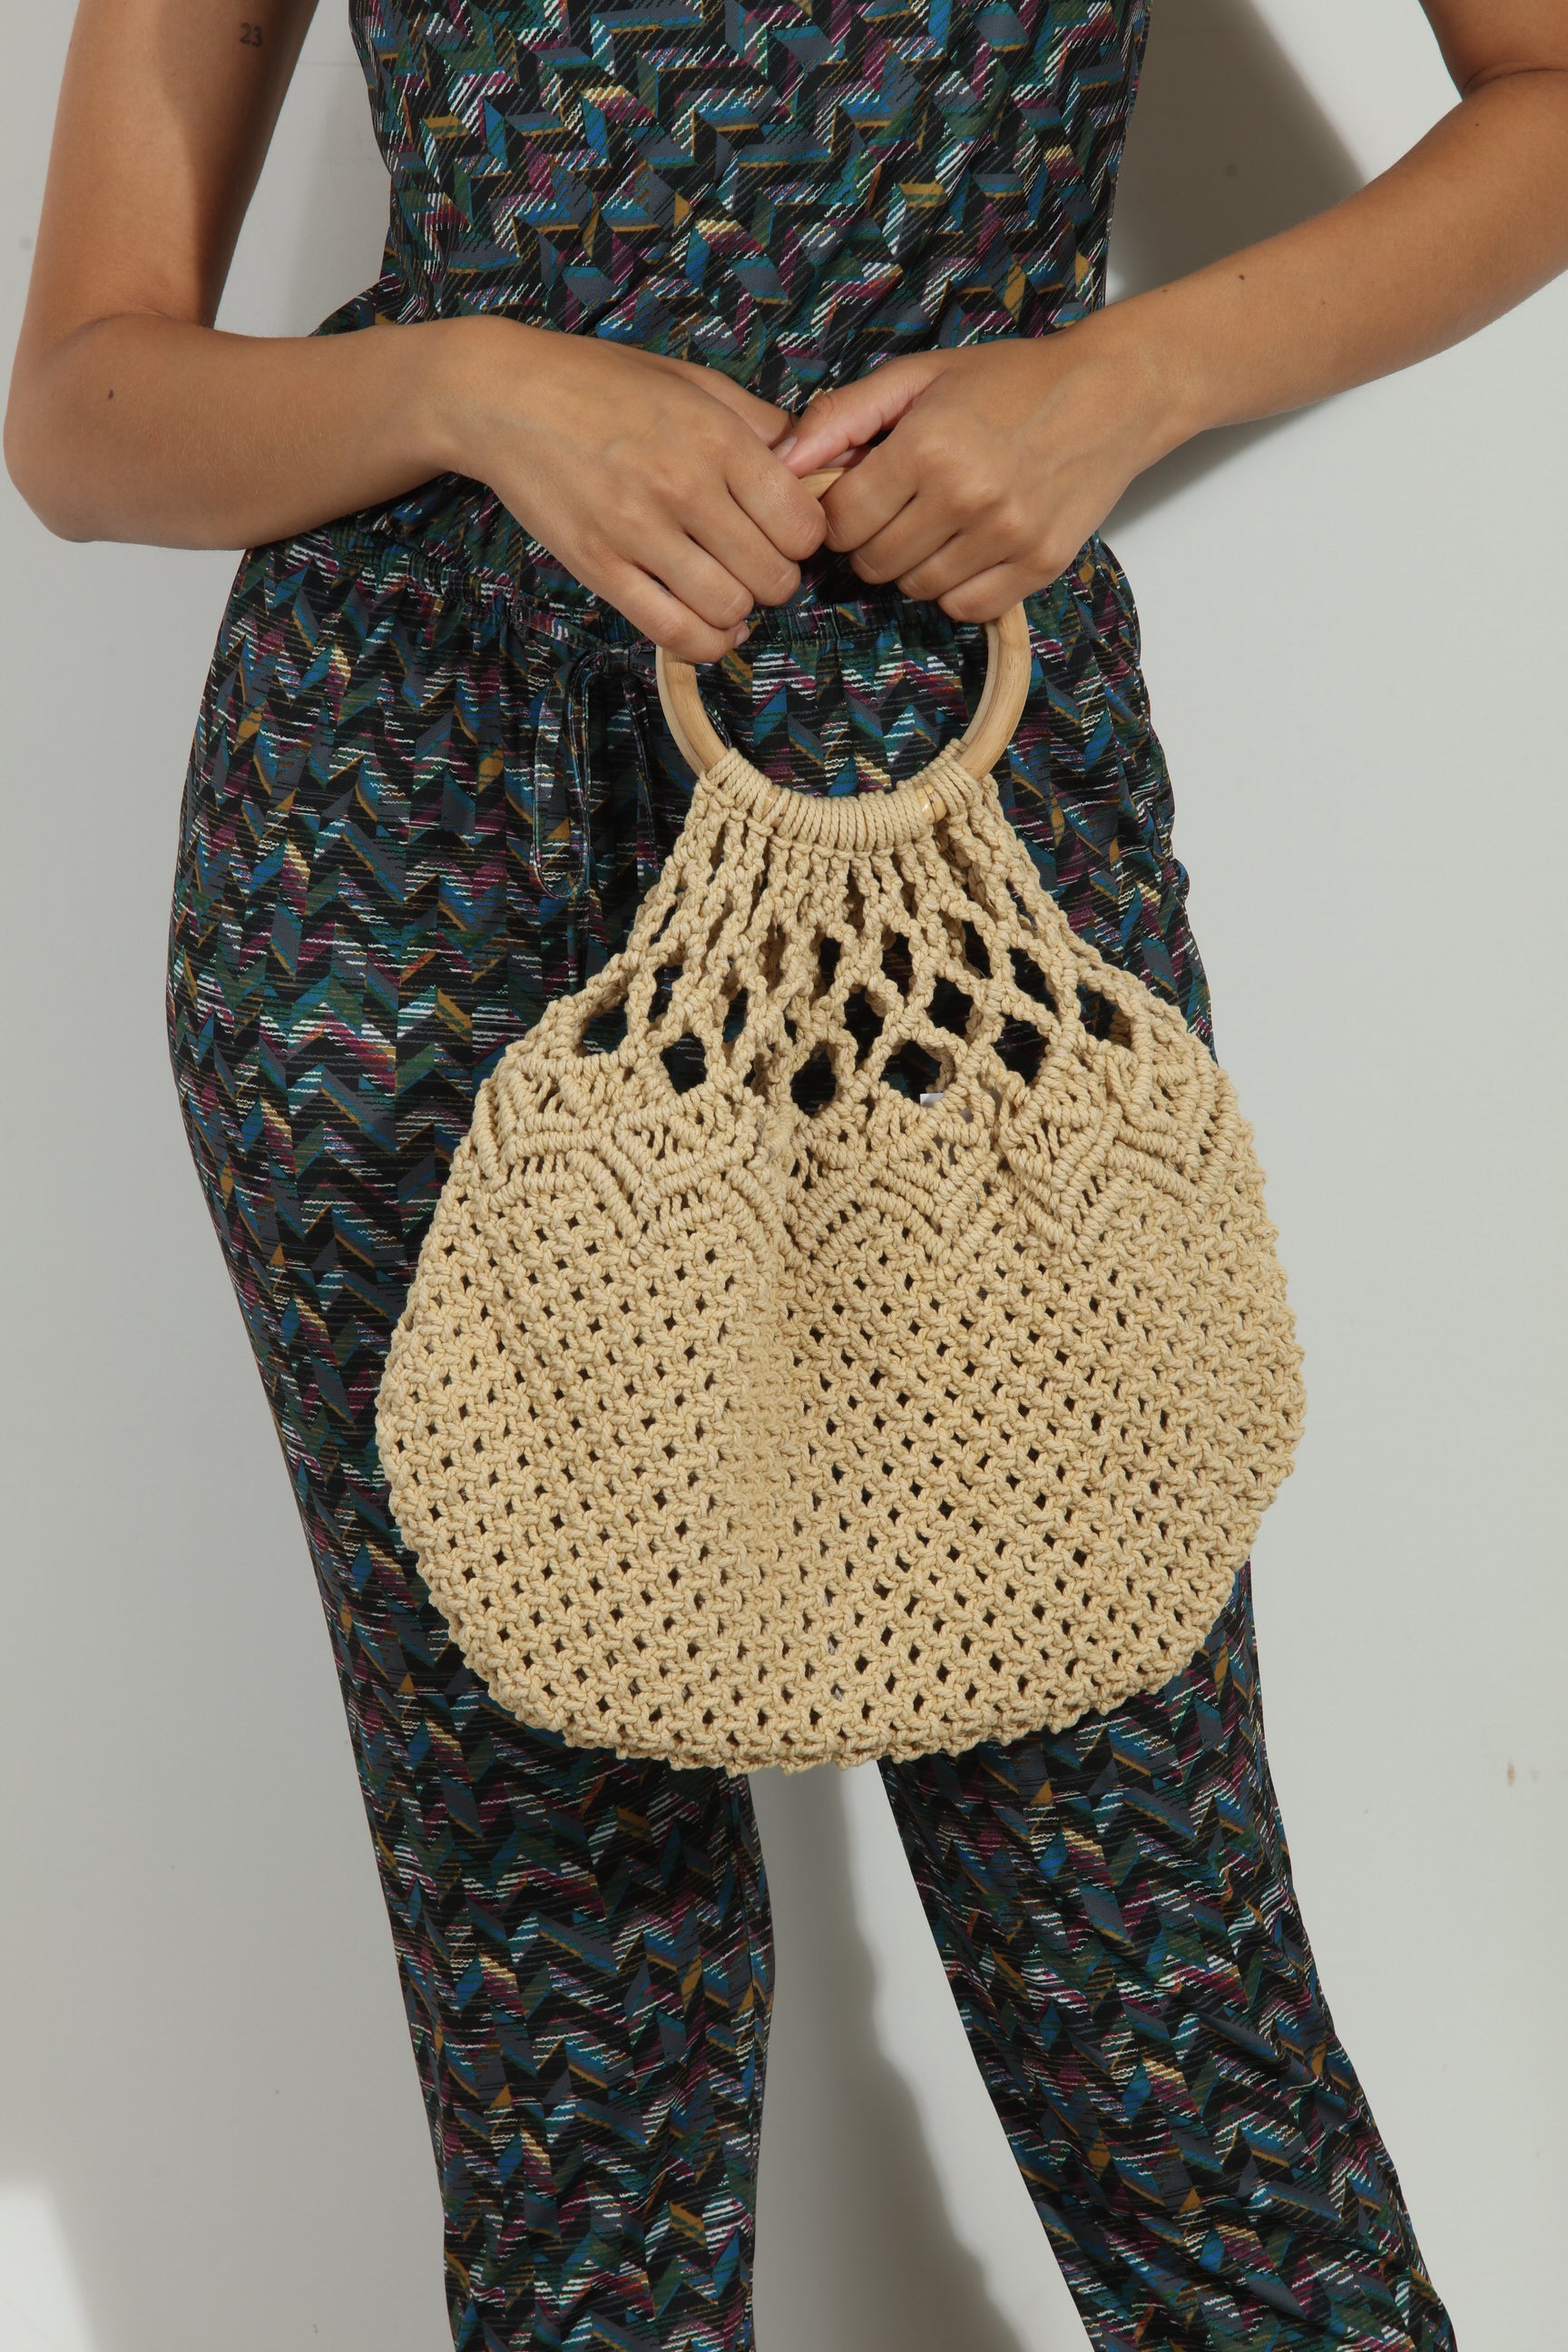 Tan Crochet Handbag